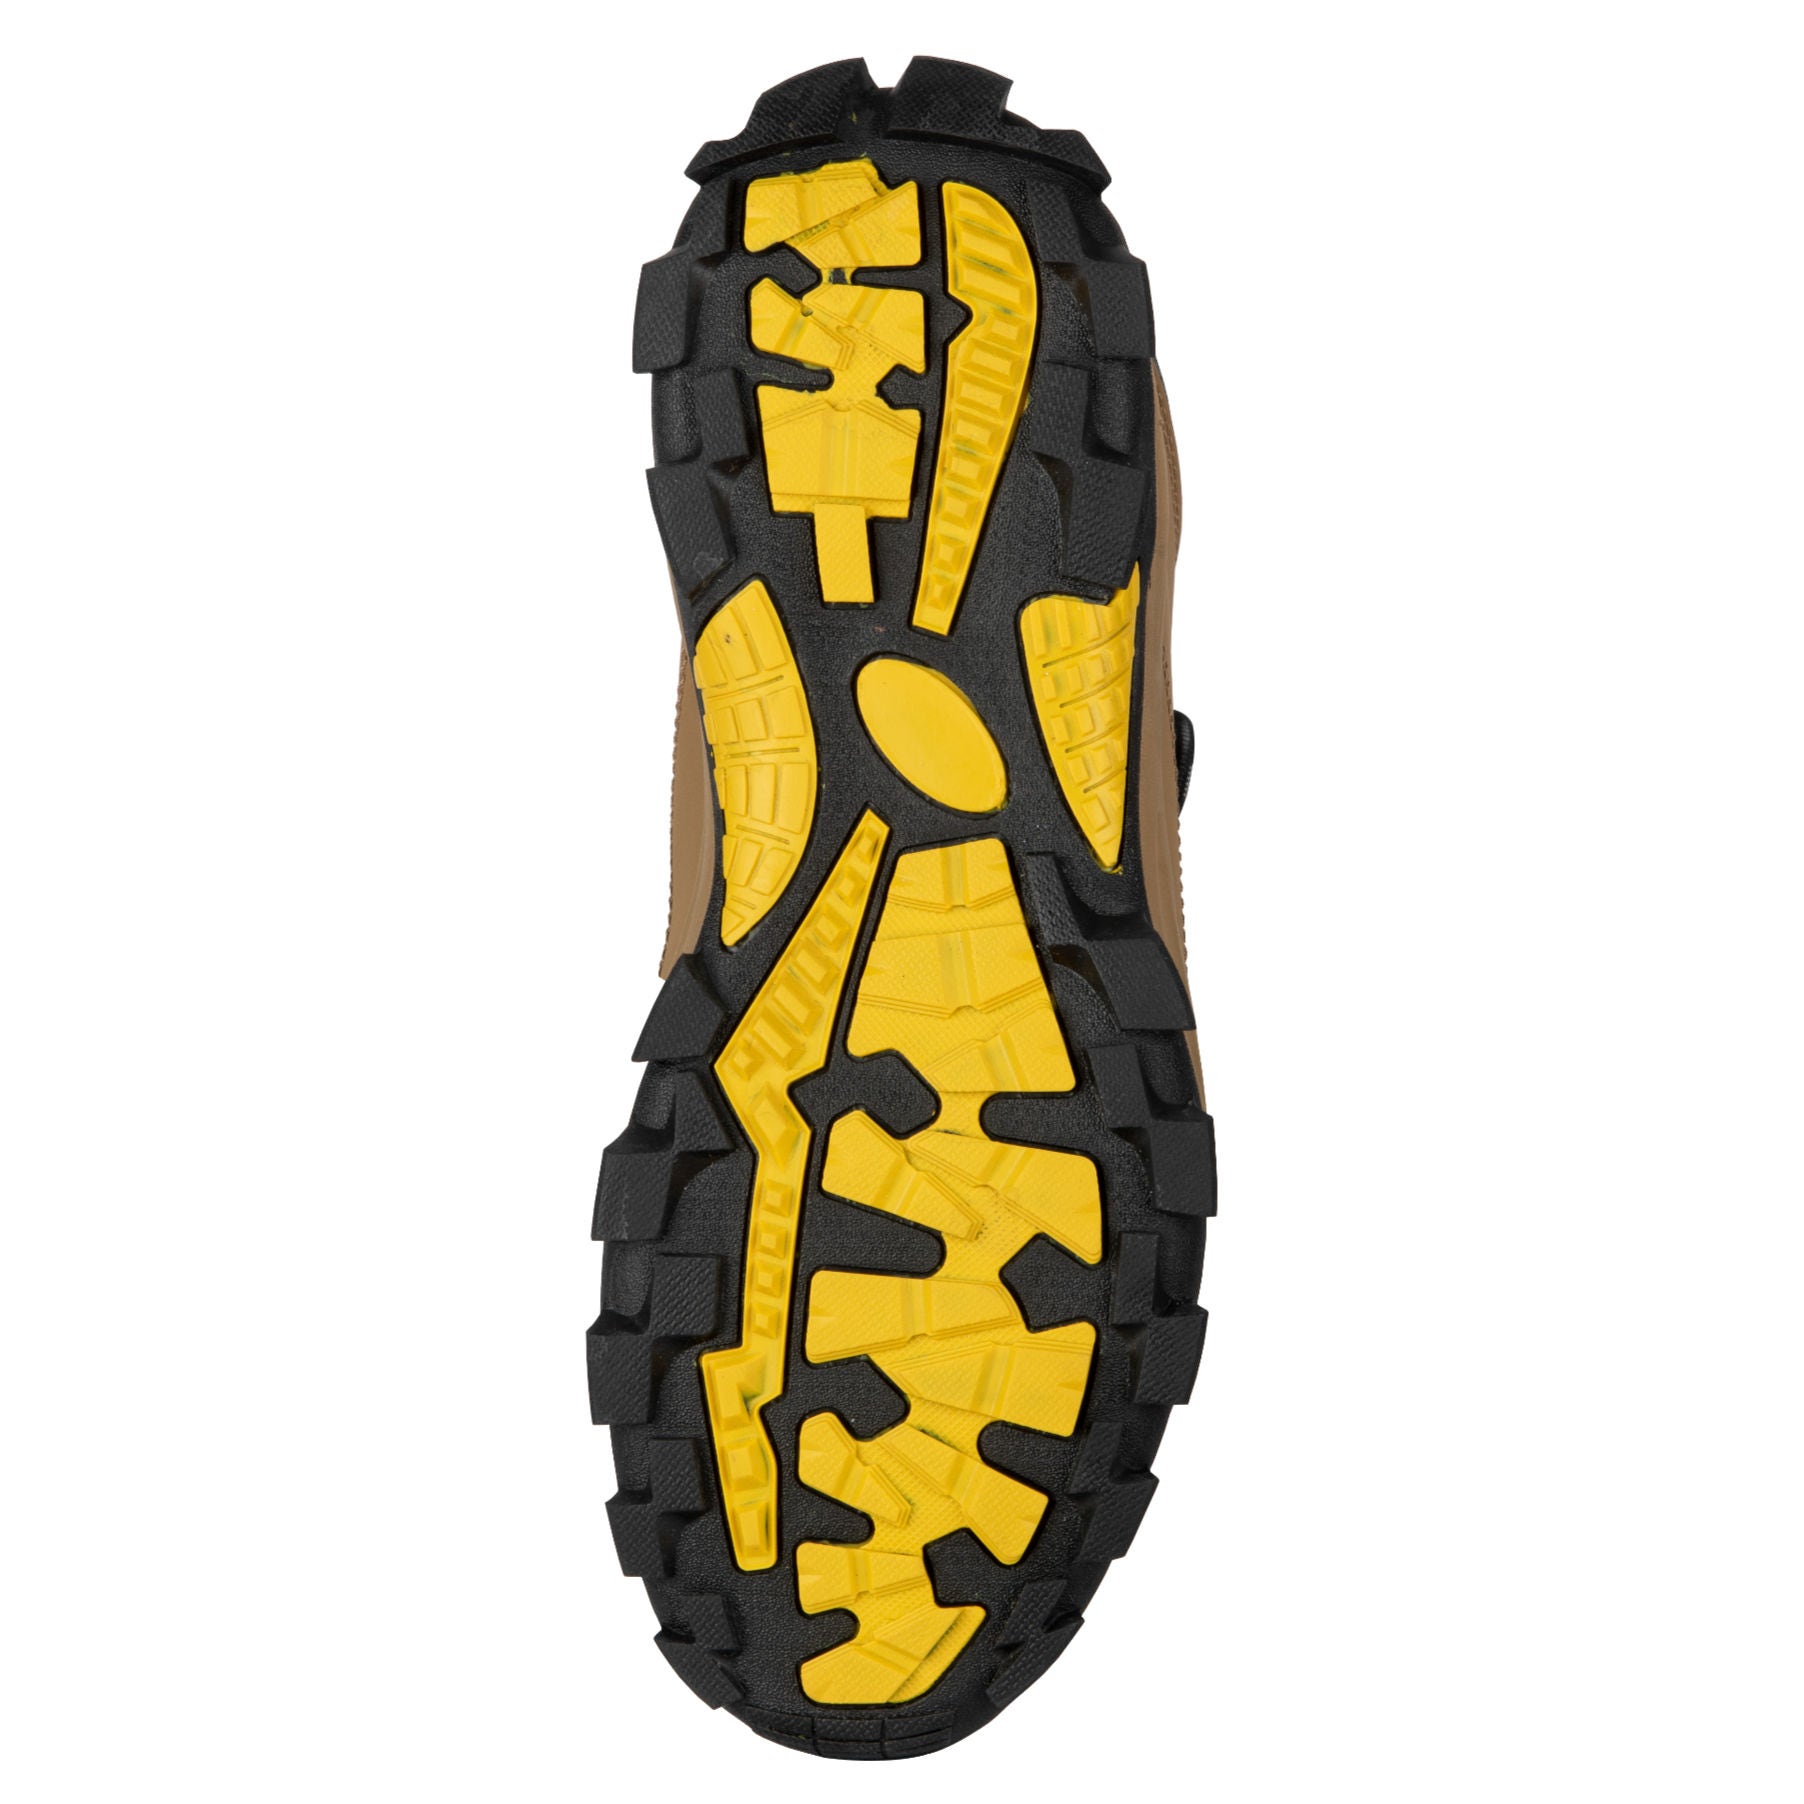 Pantofi de protectie Journeyman, cu bombeu compozit, nubuck PU + material textil, maro + negru, S1 SRC, marimea 43